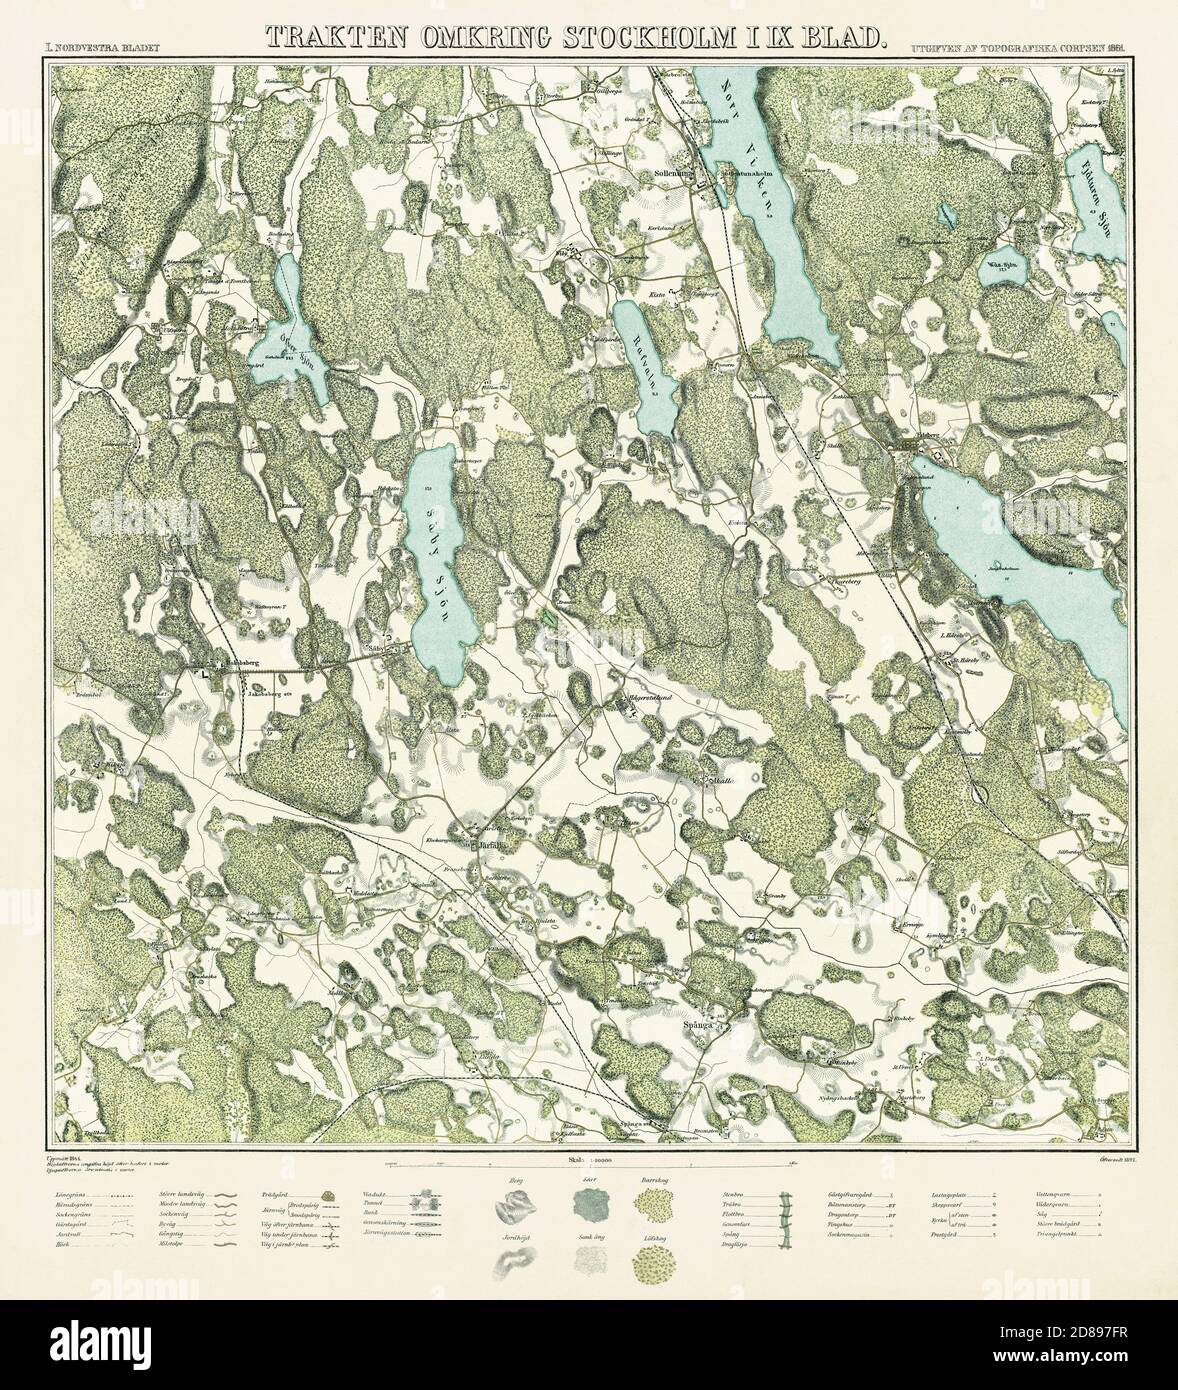 Carte de Stockholm, 'Trakten omkring Stockholm' 1861. Neuf cartes fait une carte complète de Stockholm. Banque D'Images